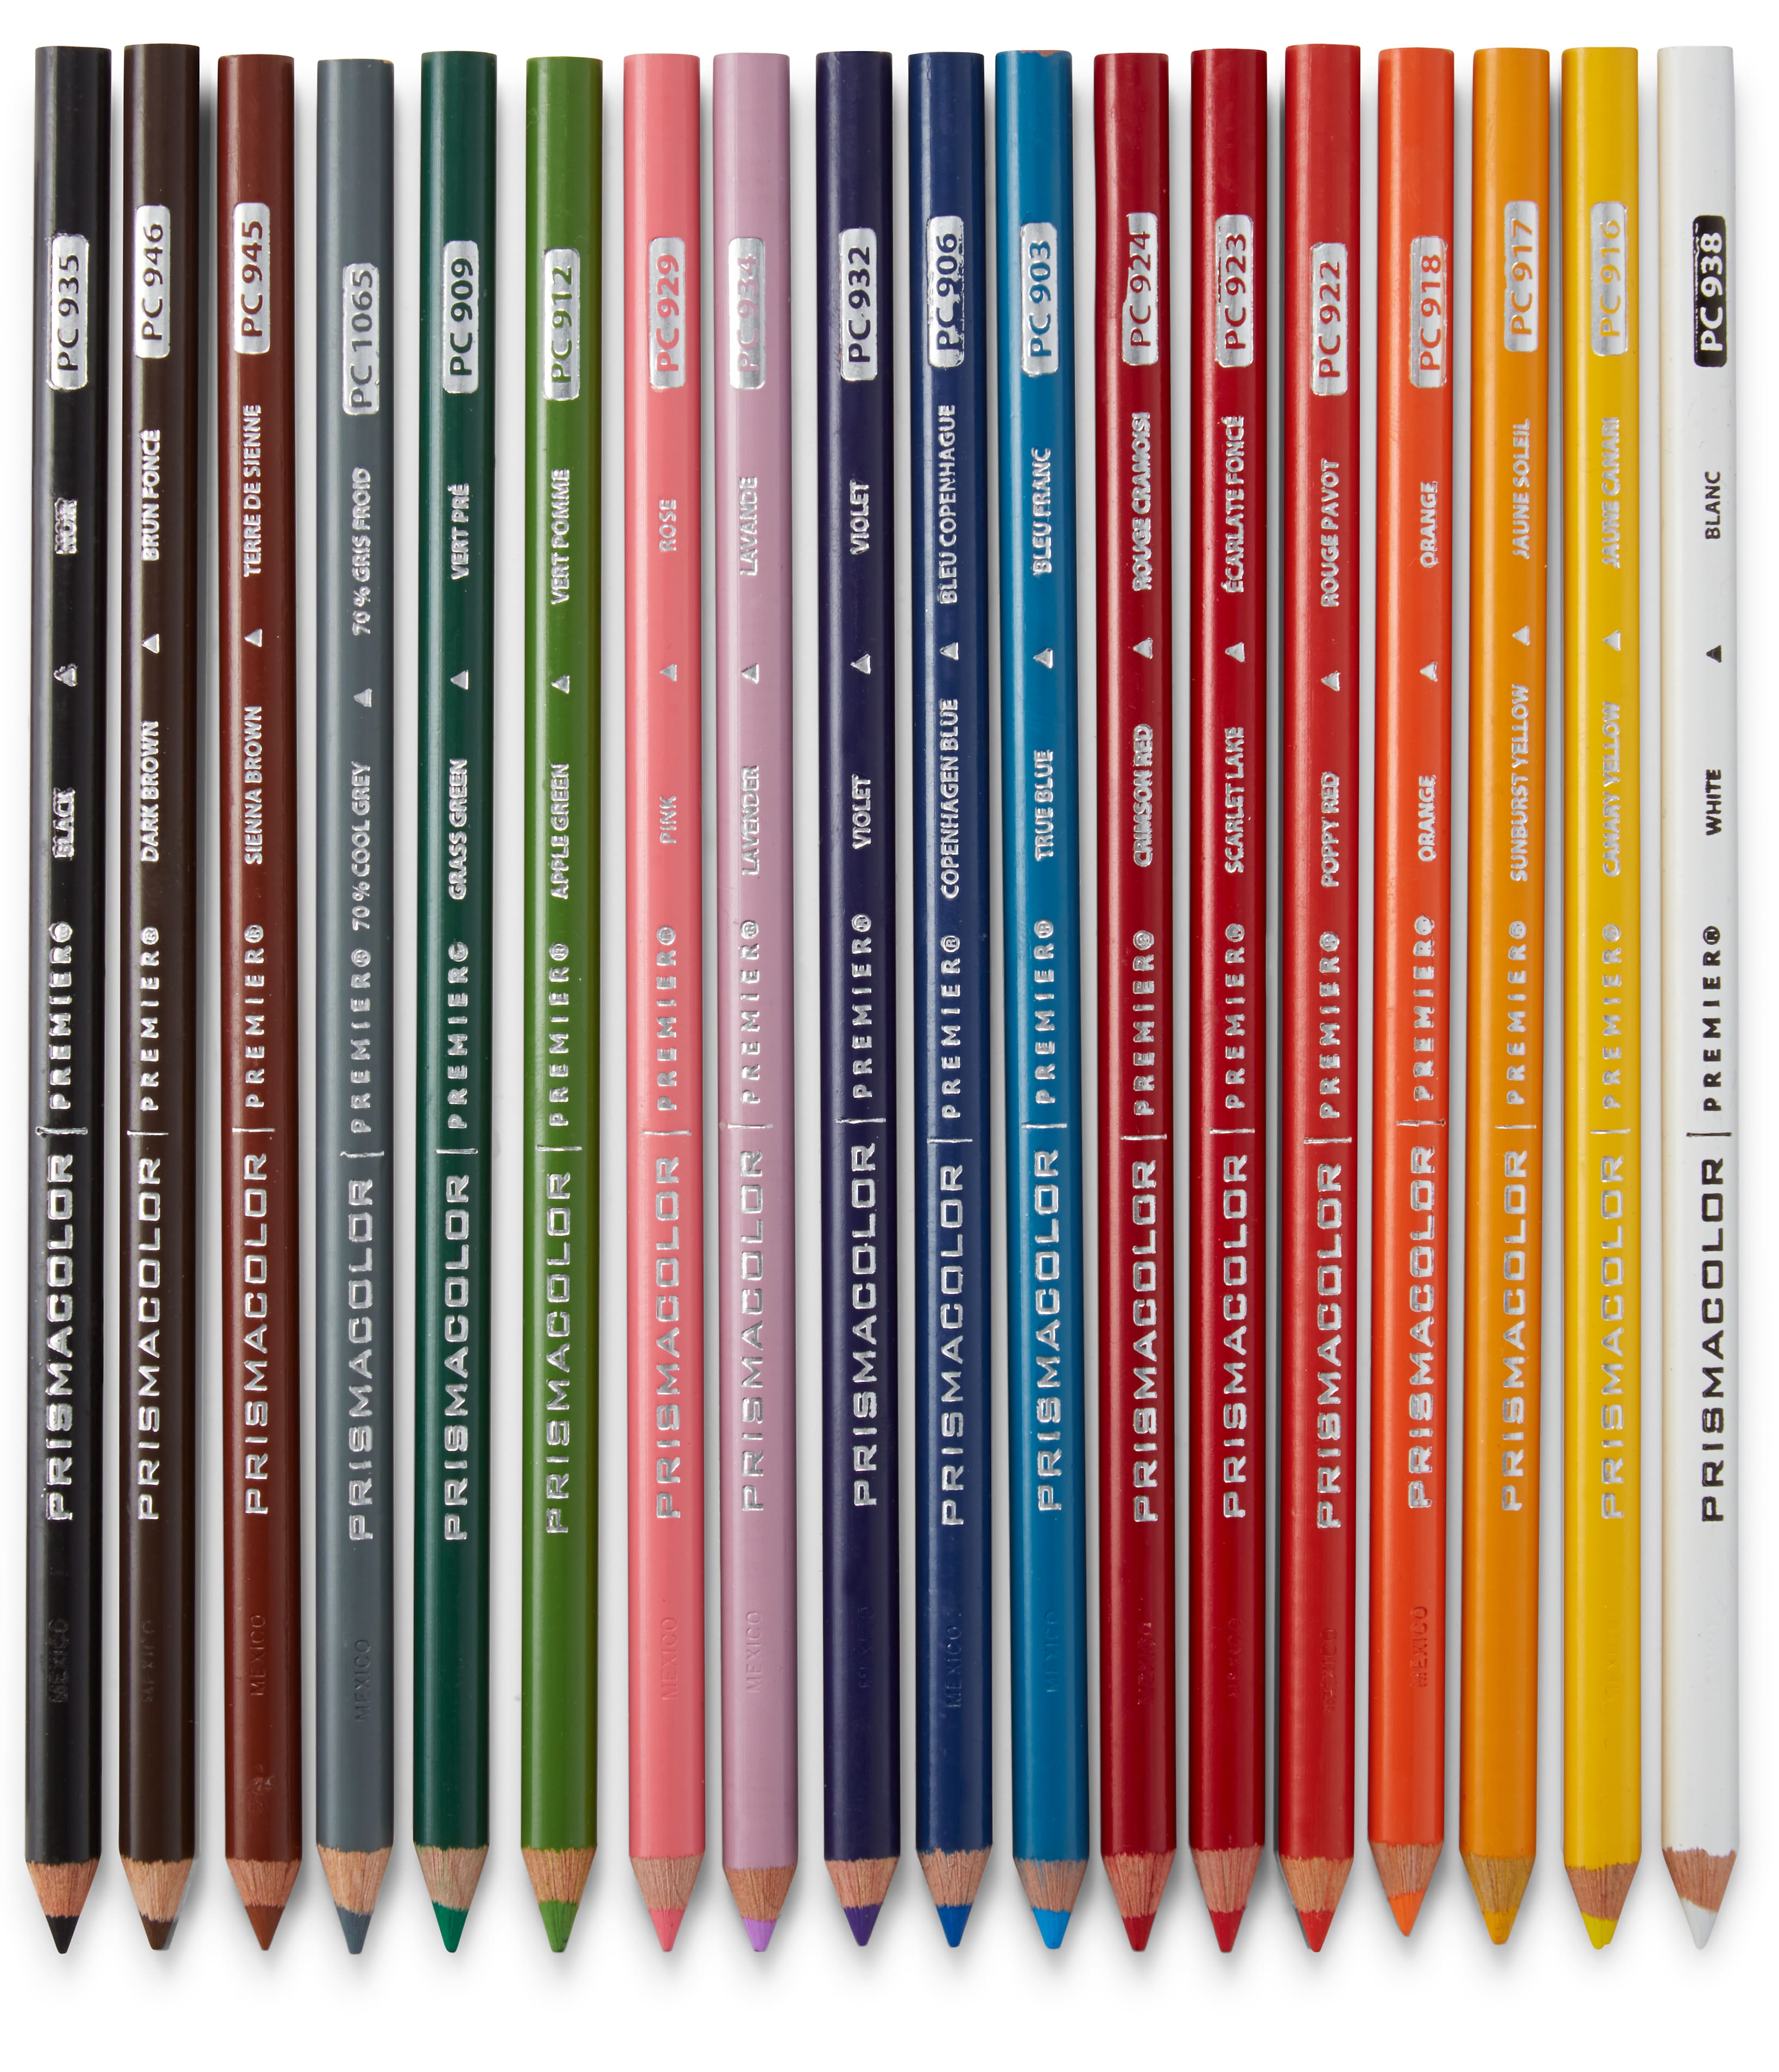 72 Pieces] Prismacolor Premier Soft Core Colored Pencils Set Professi